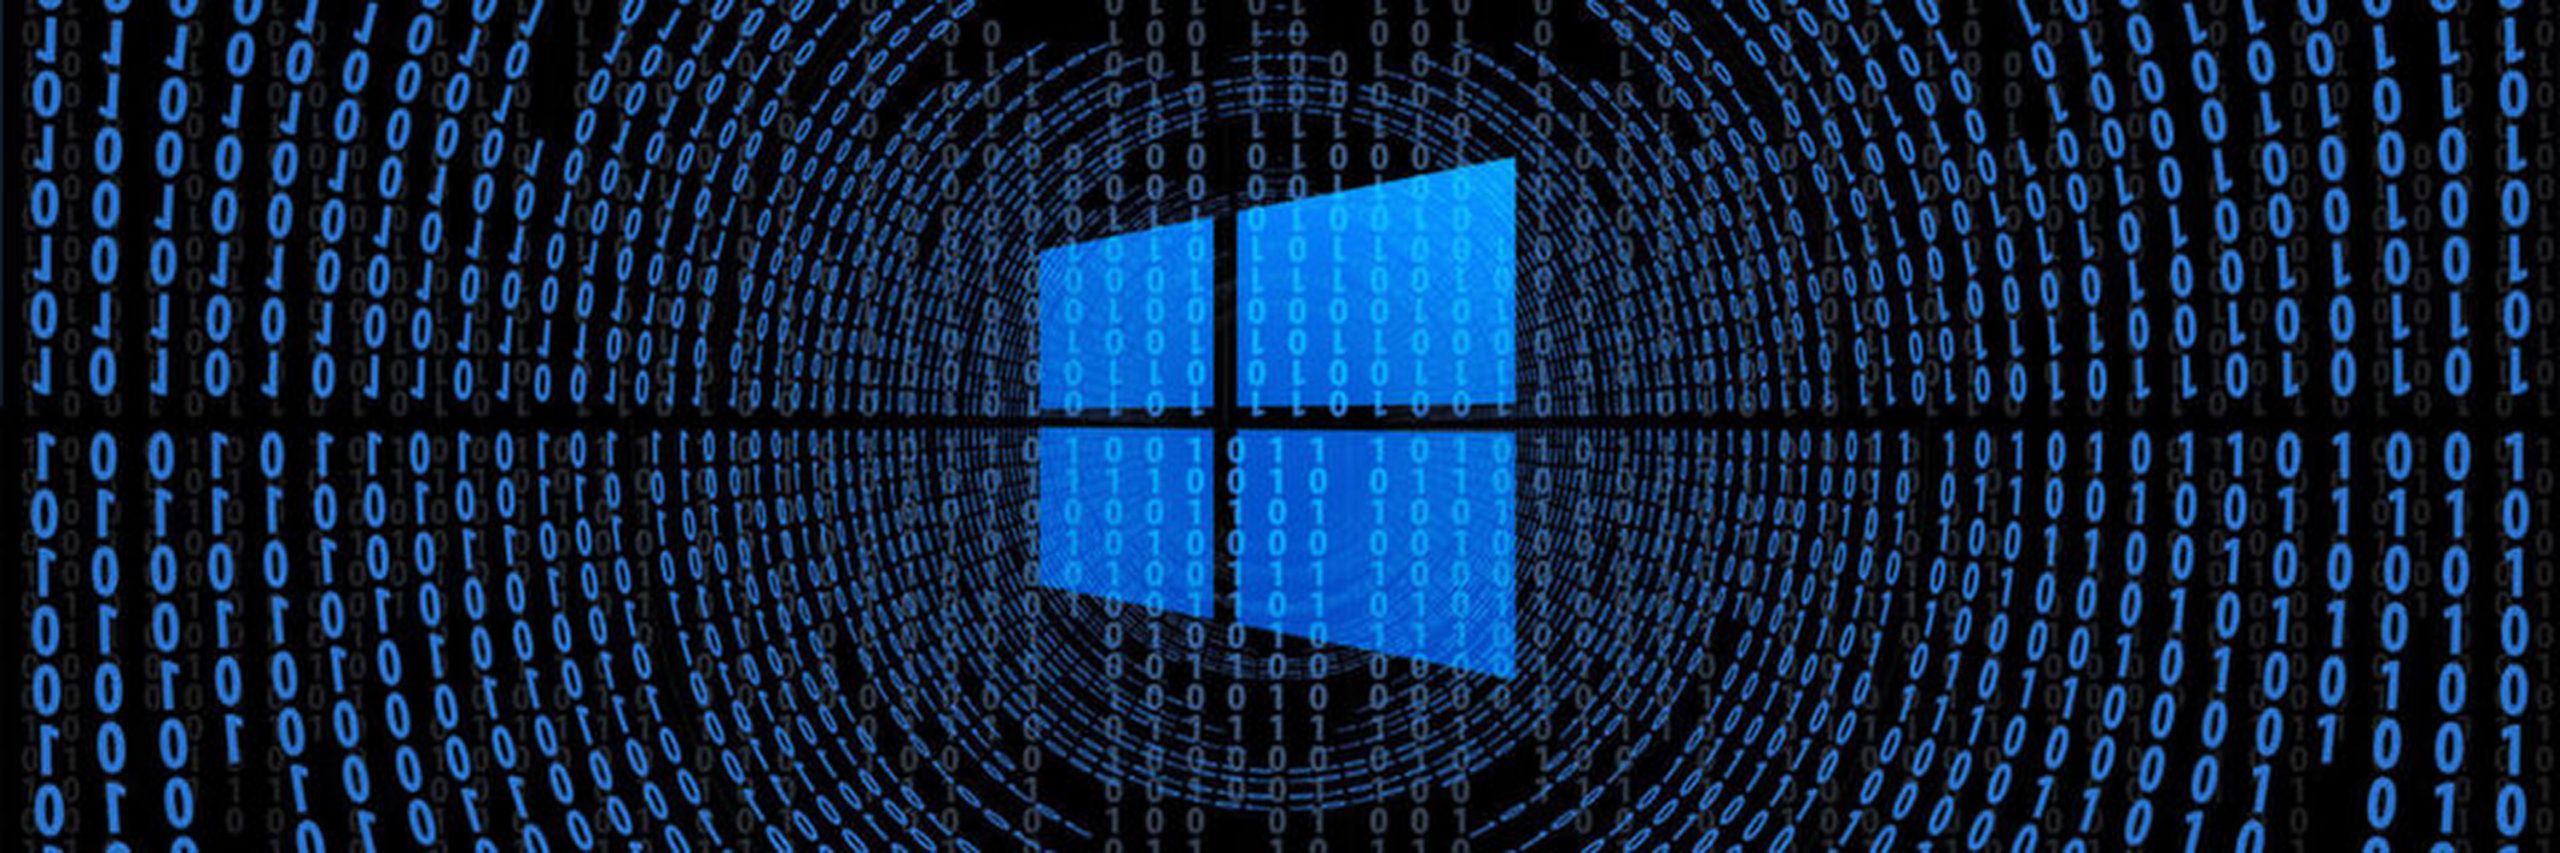 ЛК предупреждает о мошенниках, предлагающих ПО Windows